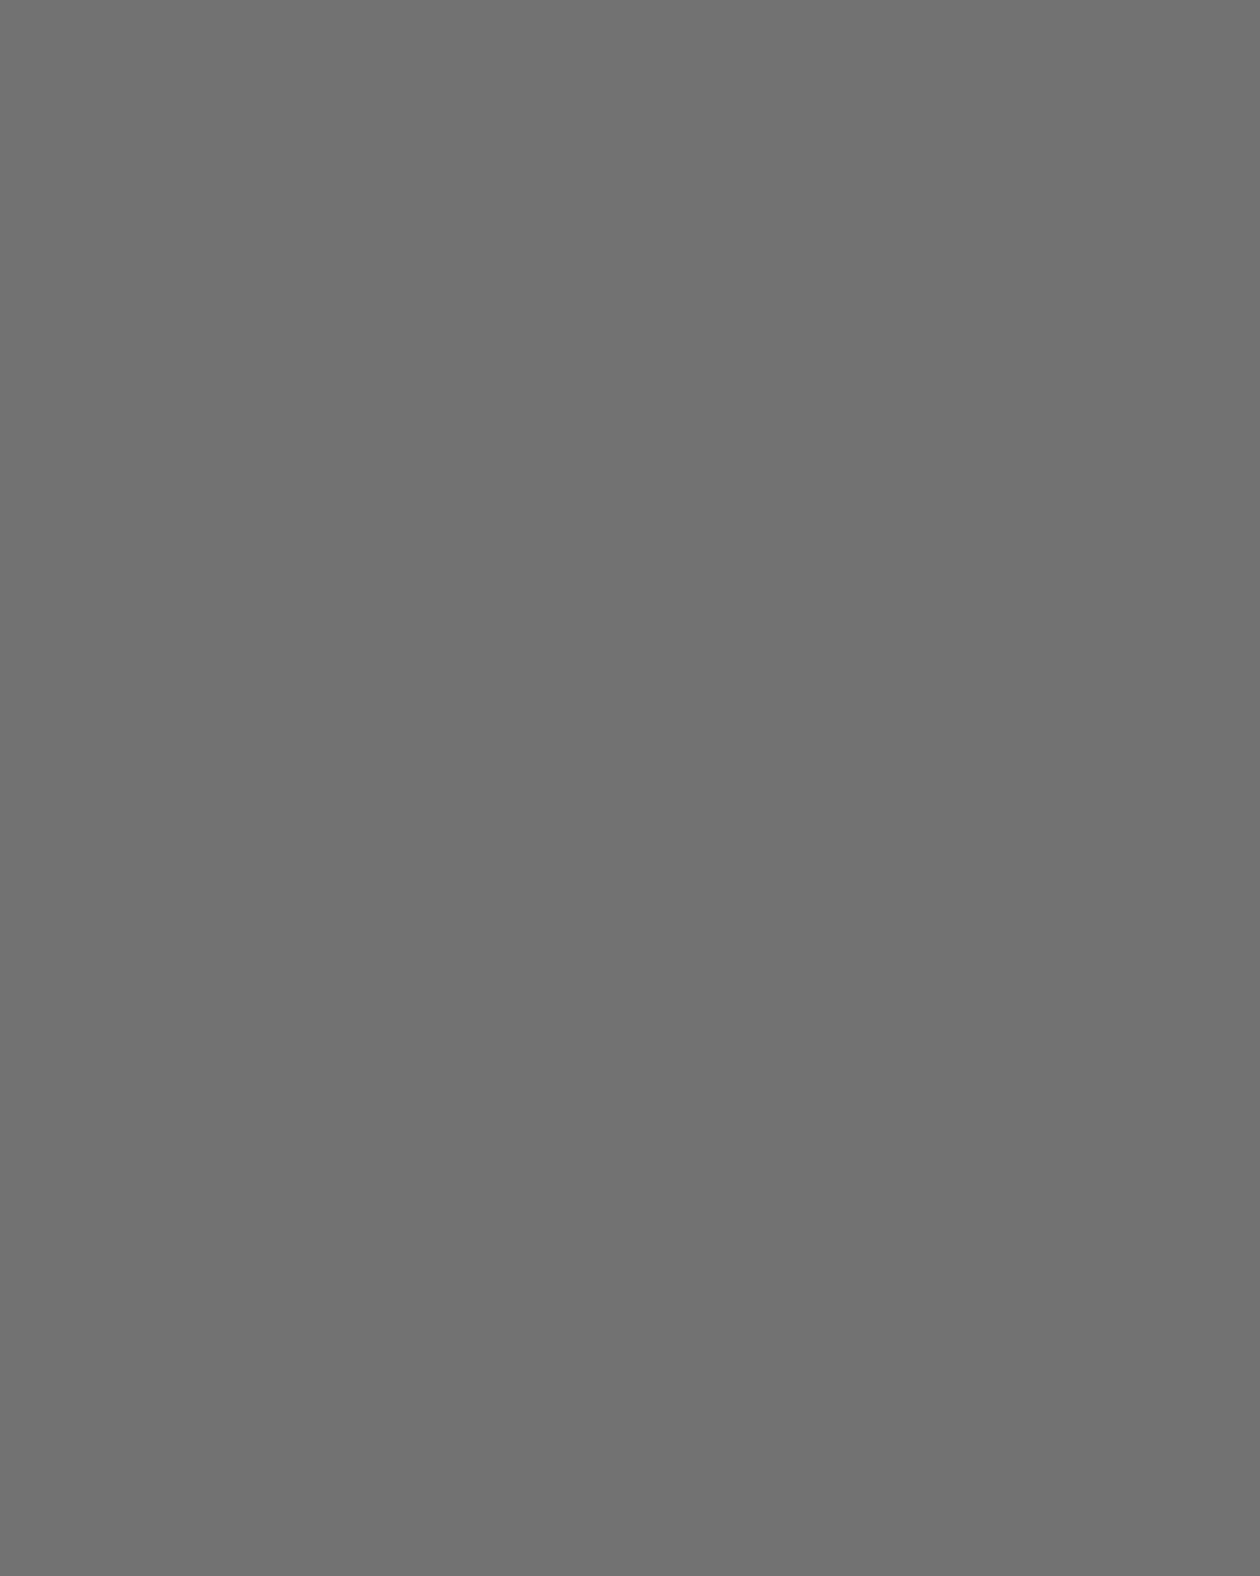 Аркадий Арканов (слева) и писатель Григорий Горин. Иллюстрация из книги Аркадия Арканова «Вперед в прошлое». Москва: издательство «Эксмо», 2011